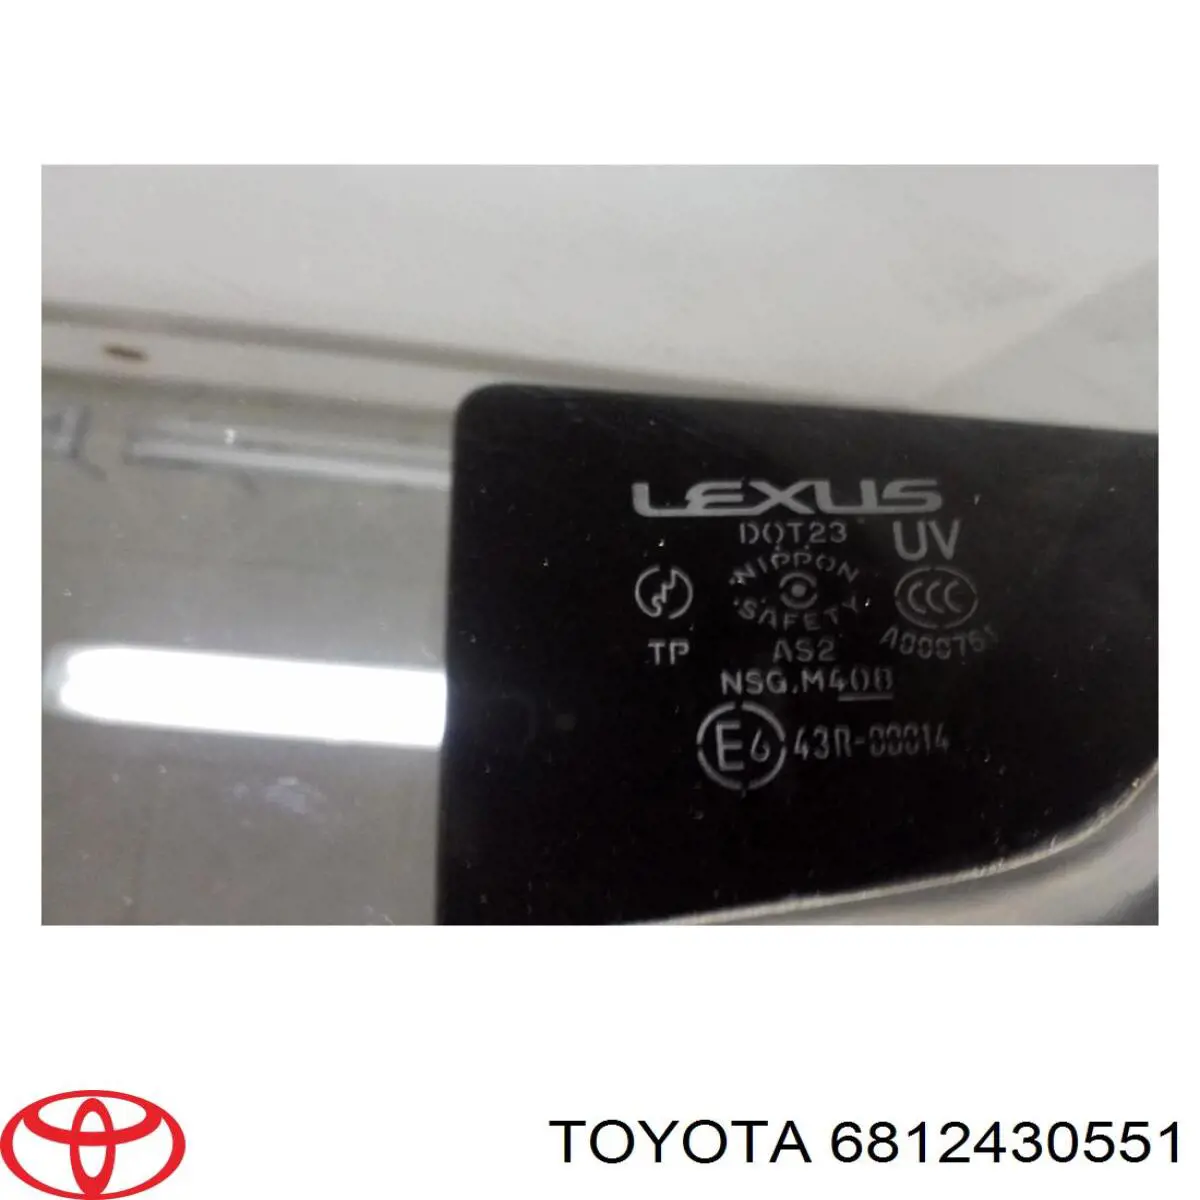 6812430551 Toyota ventanilla lateral de la puerta trasera izquierda